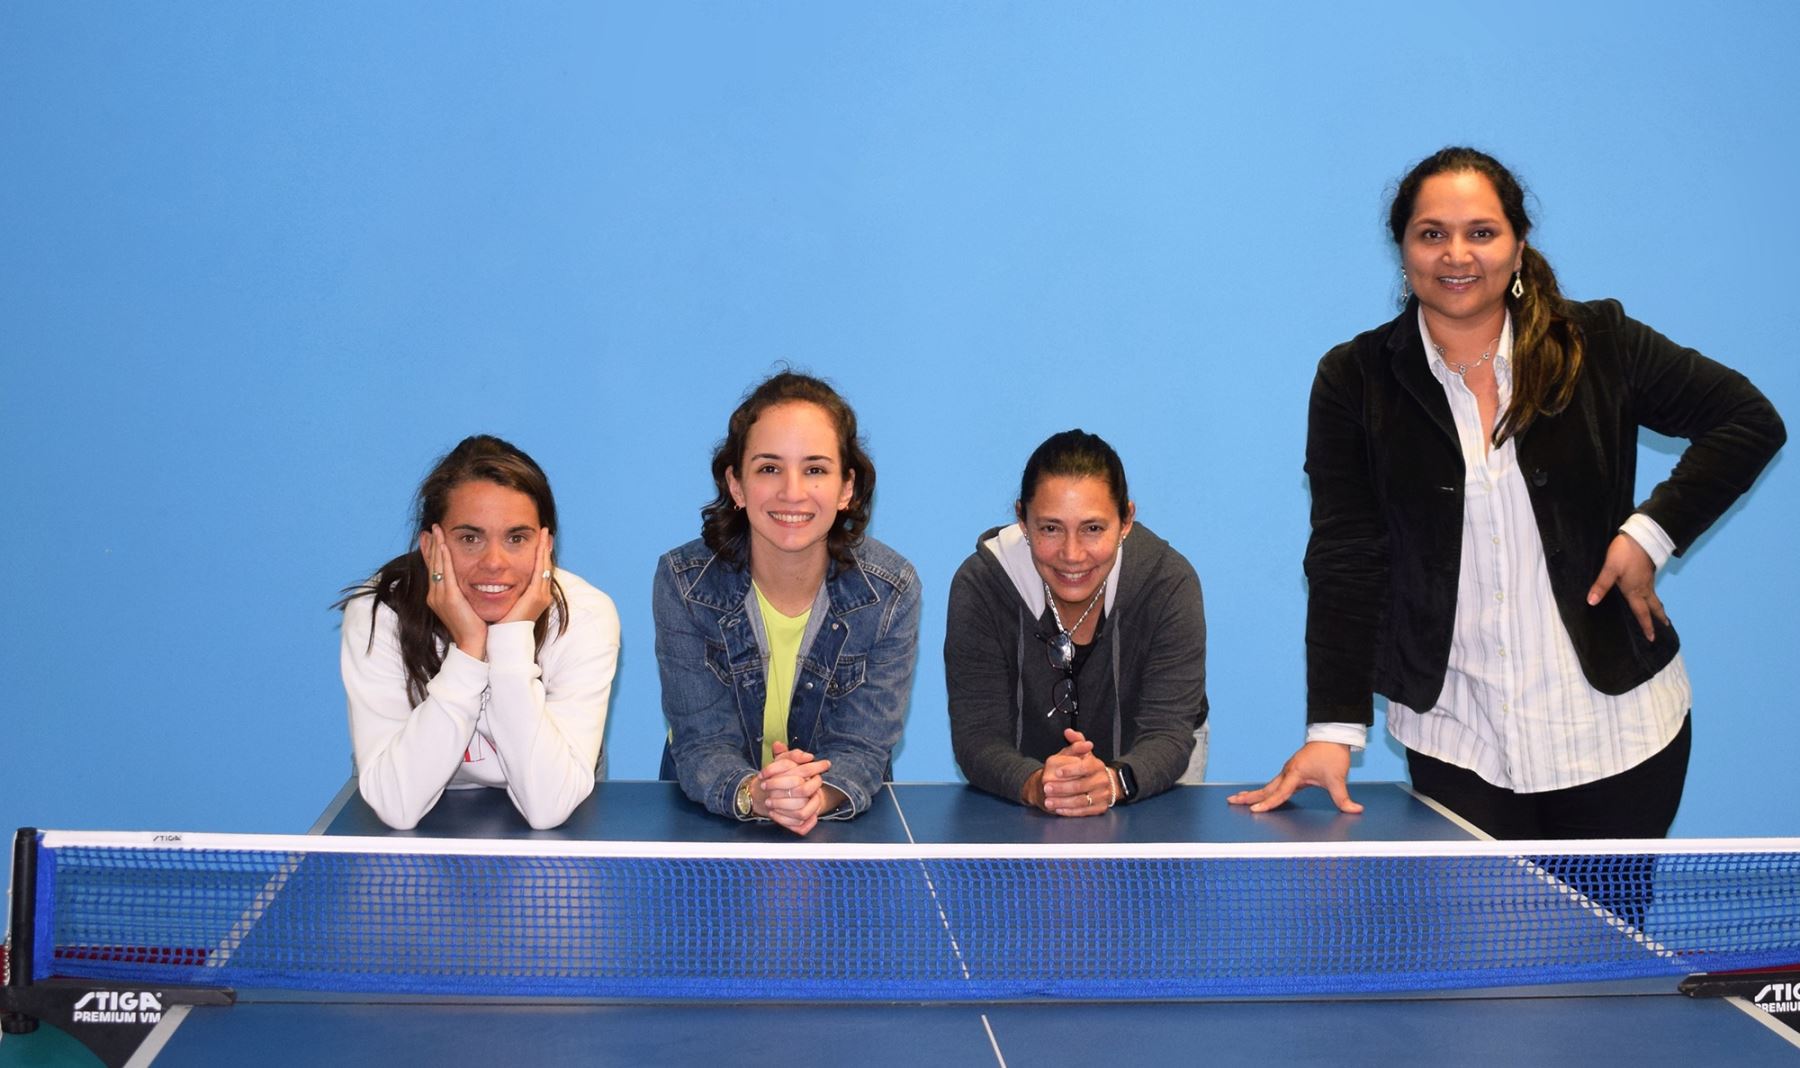 Lima fue sede del Curso Internacional de Tenis de Mesa para la Mujer, que fue organizado por la federación peruana de esta disciplina y en la cual participaron 25 exponentes (23 damas y 2 varones) provenientes de Lima, Callao, Huancayo, Chiclayo, Trujillo, además de Suiza y Cuba.